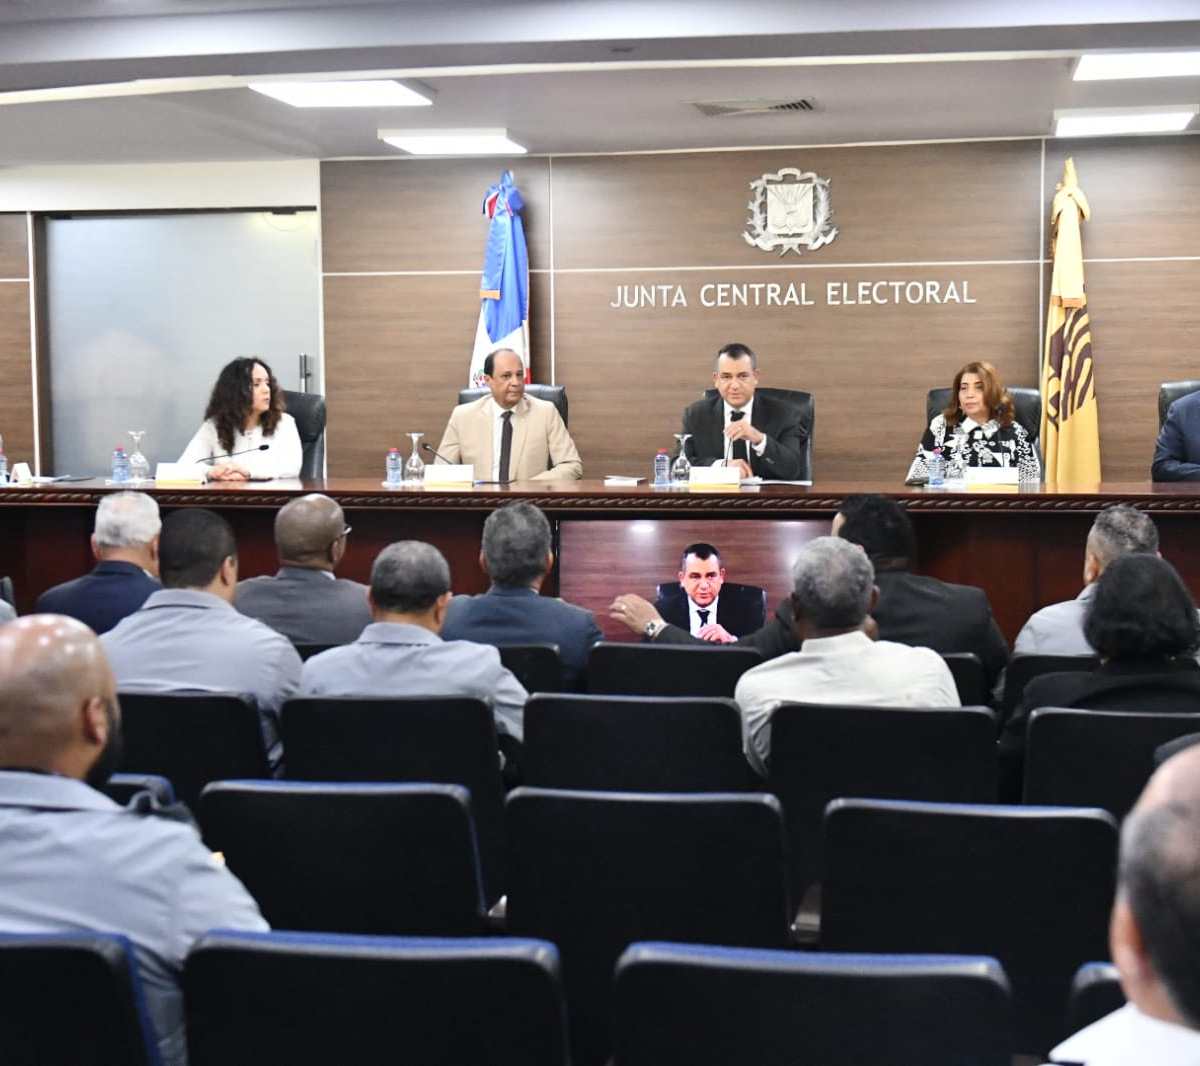 JCE otorga plazo de 48 horas a organizaciones políticas para revisión de cara a elecciones de mayo –  (República Dominicana)